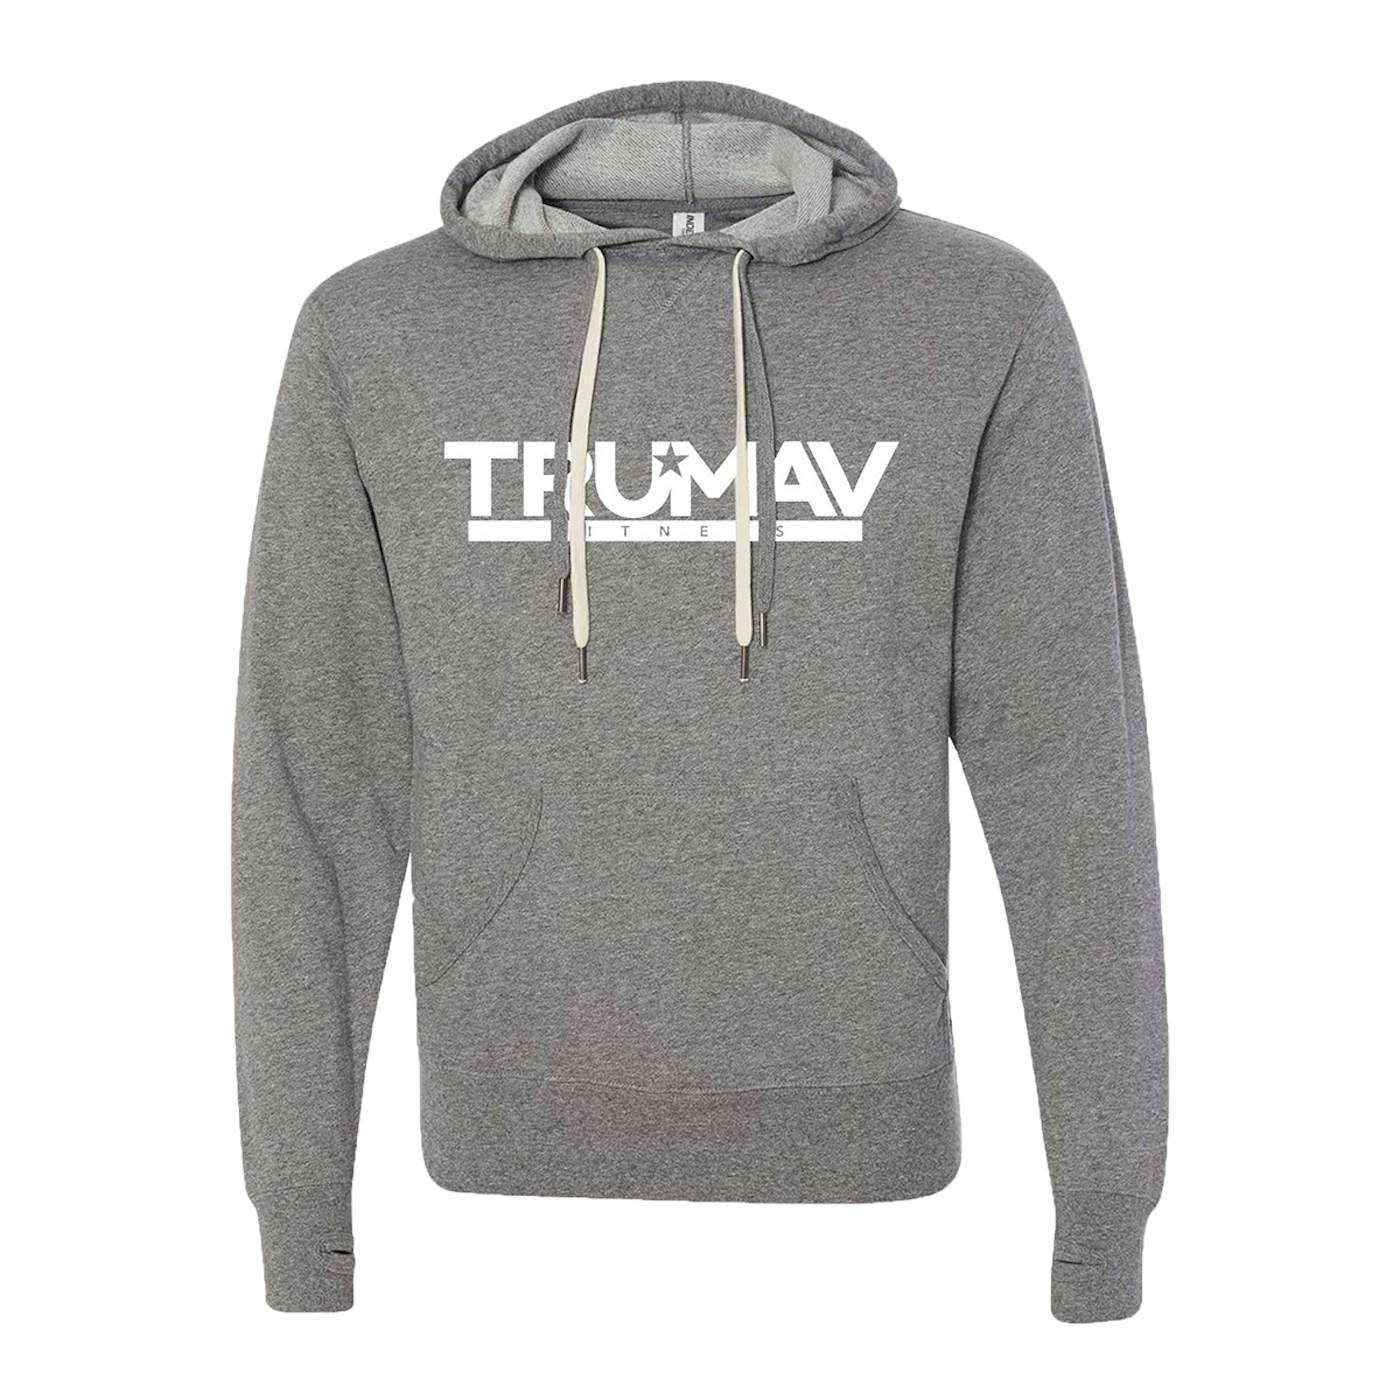 Tim McGraw TruMav Heather Gray Sweatshirt